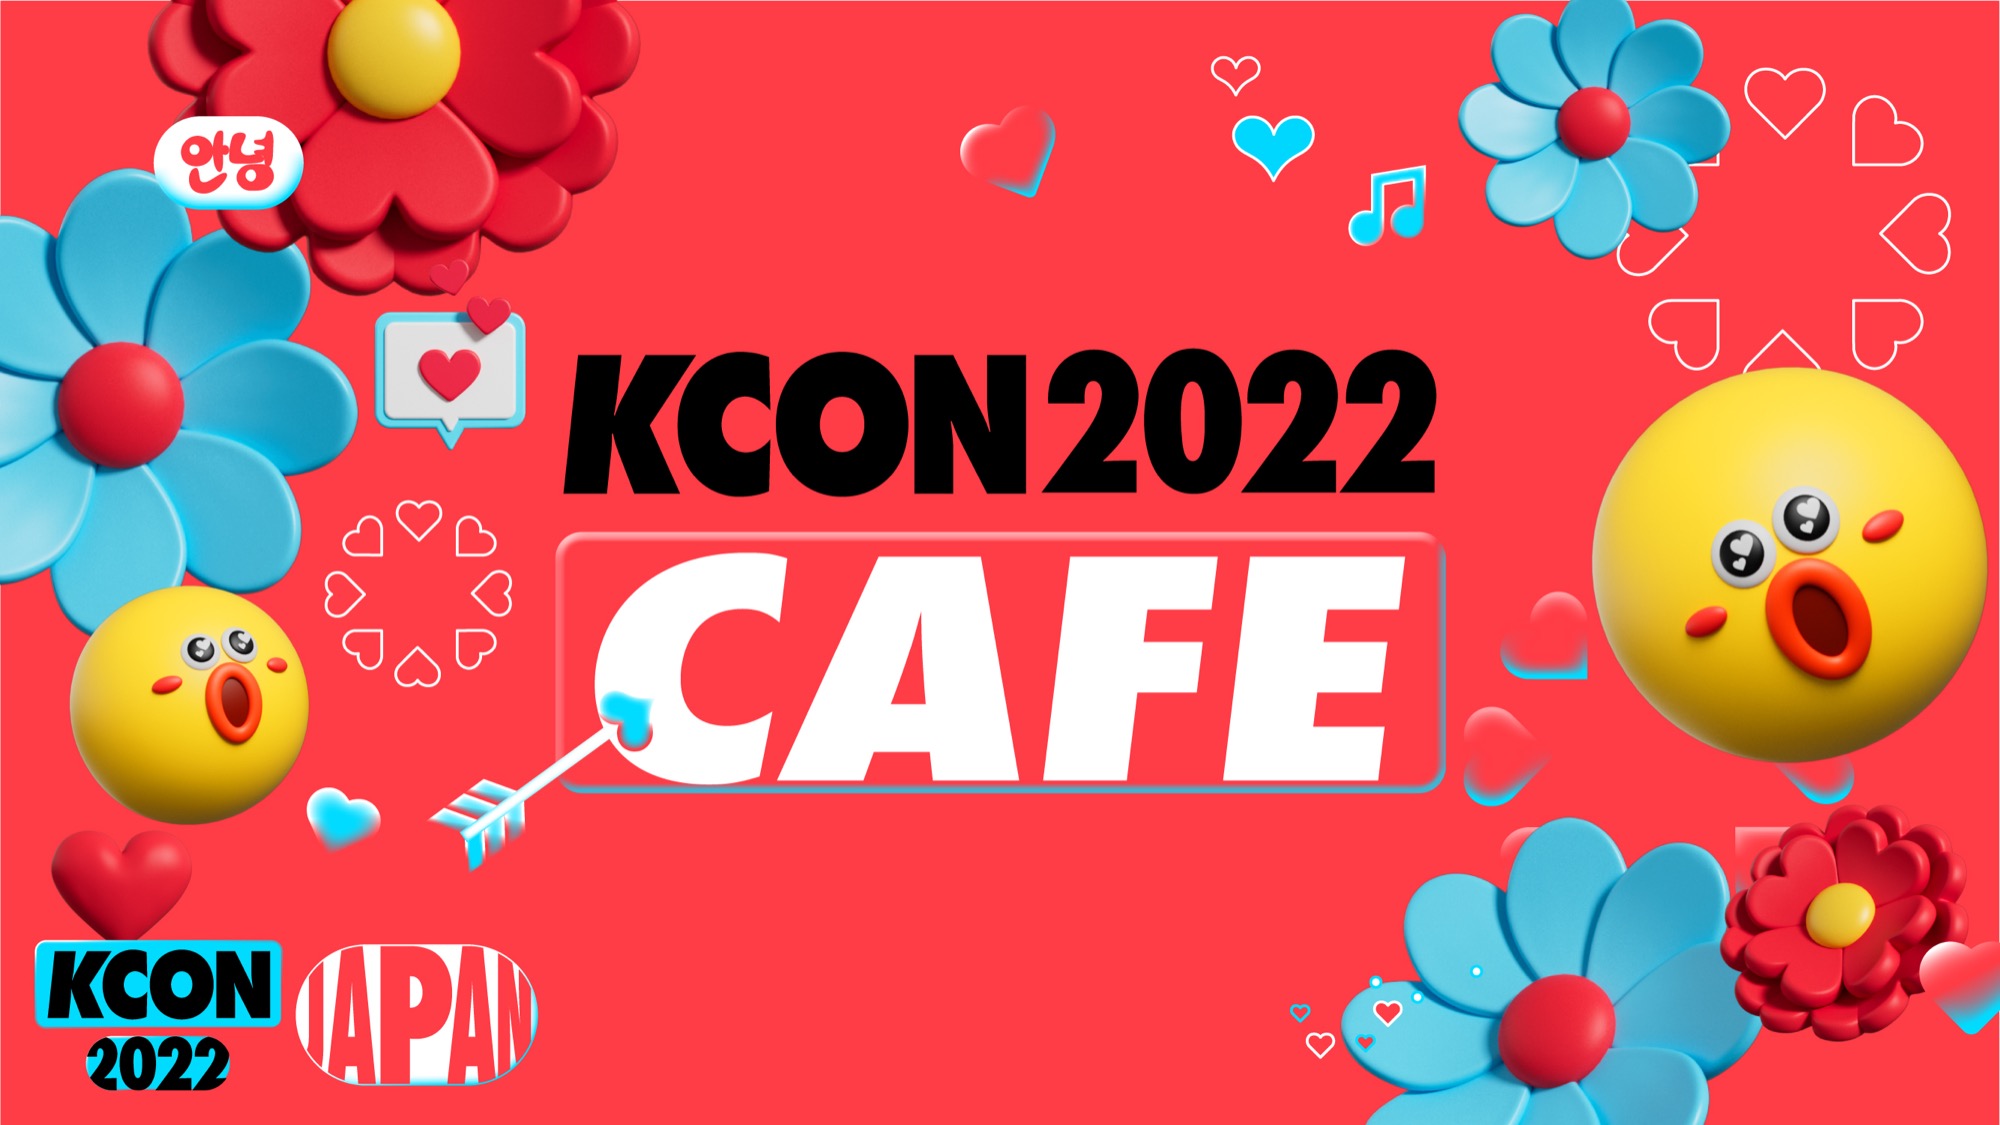 KCON 2022 CAFE in 東京 /大阪 / 名古屋 9月29日よりコラボ開催!